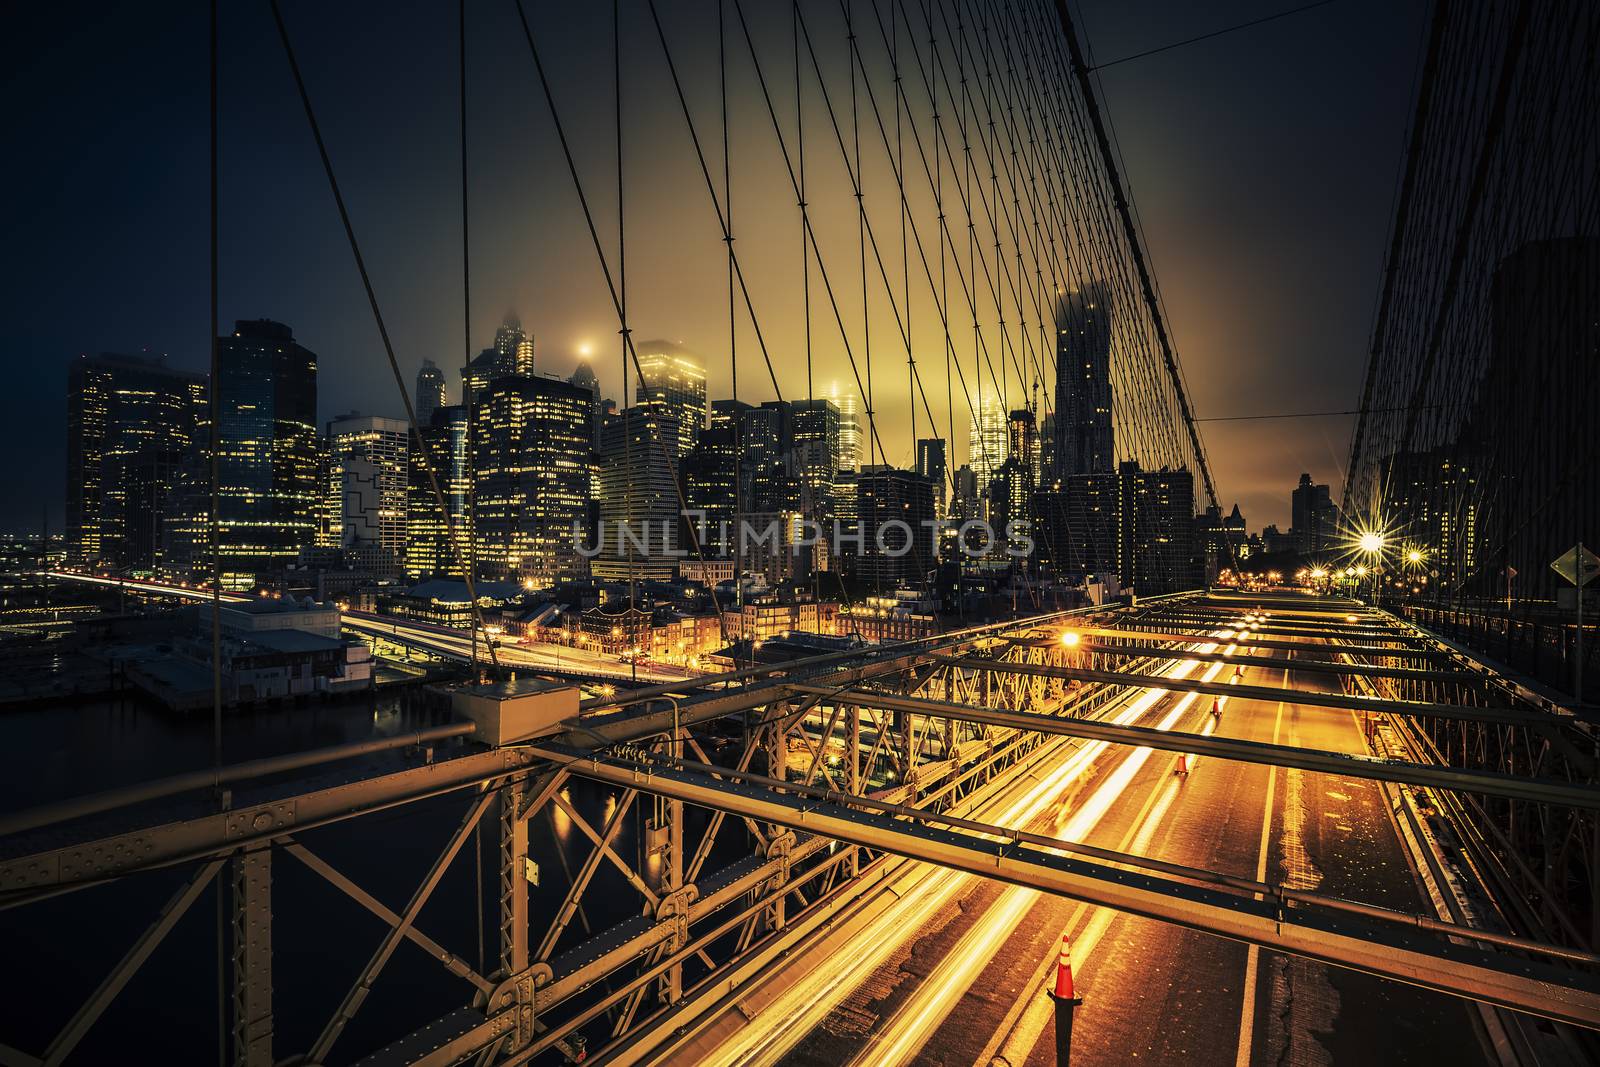 View of Brooklyn Bridge at night by vwalakte